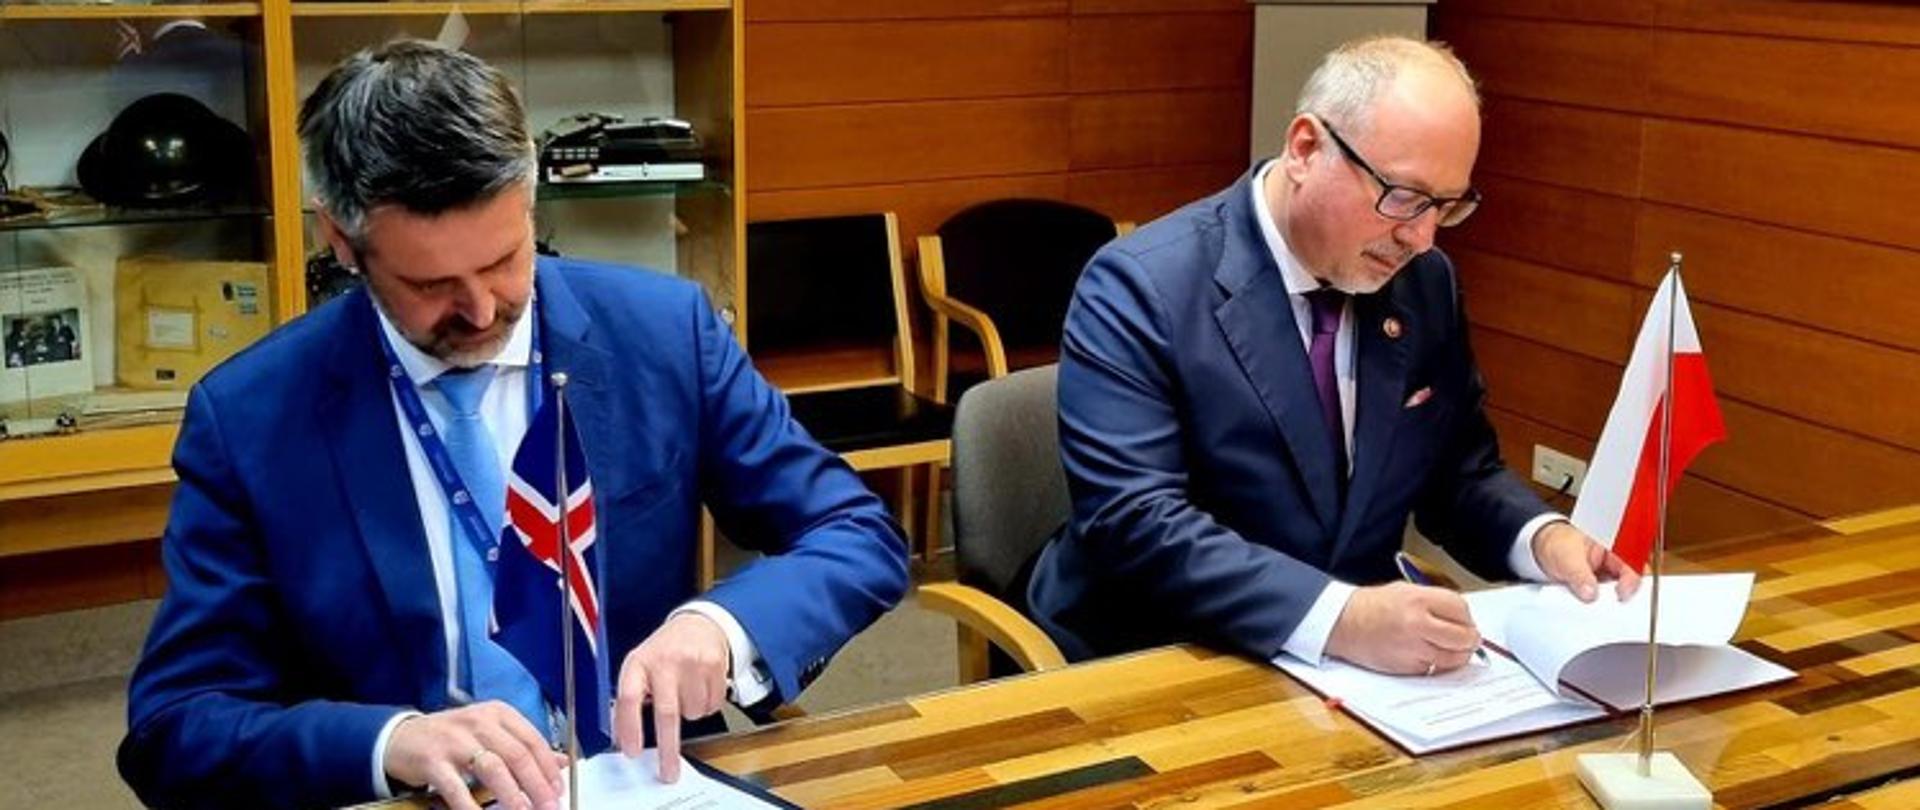 Memorandum of Understanding between Poland and Iceland 